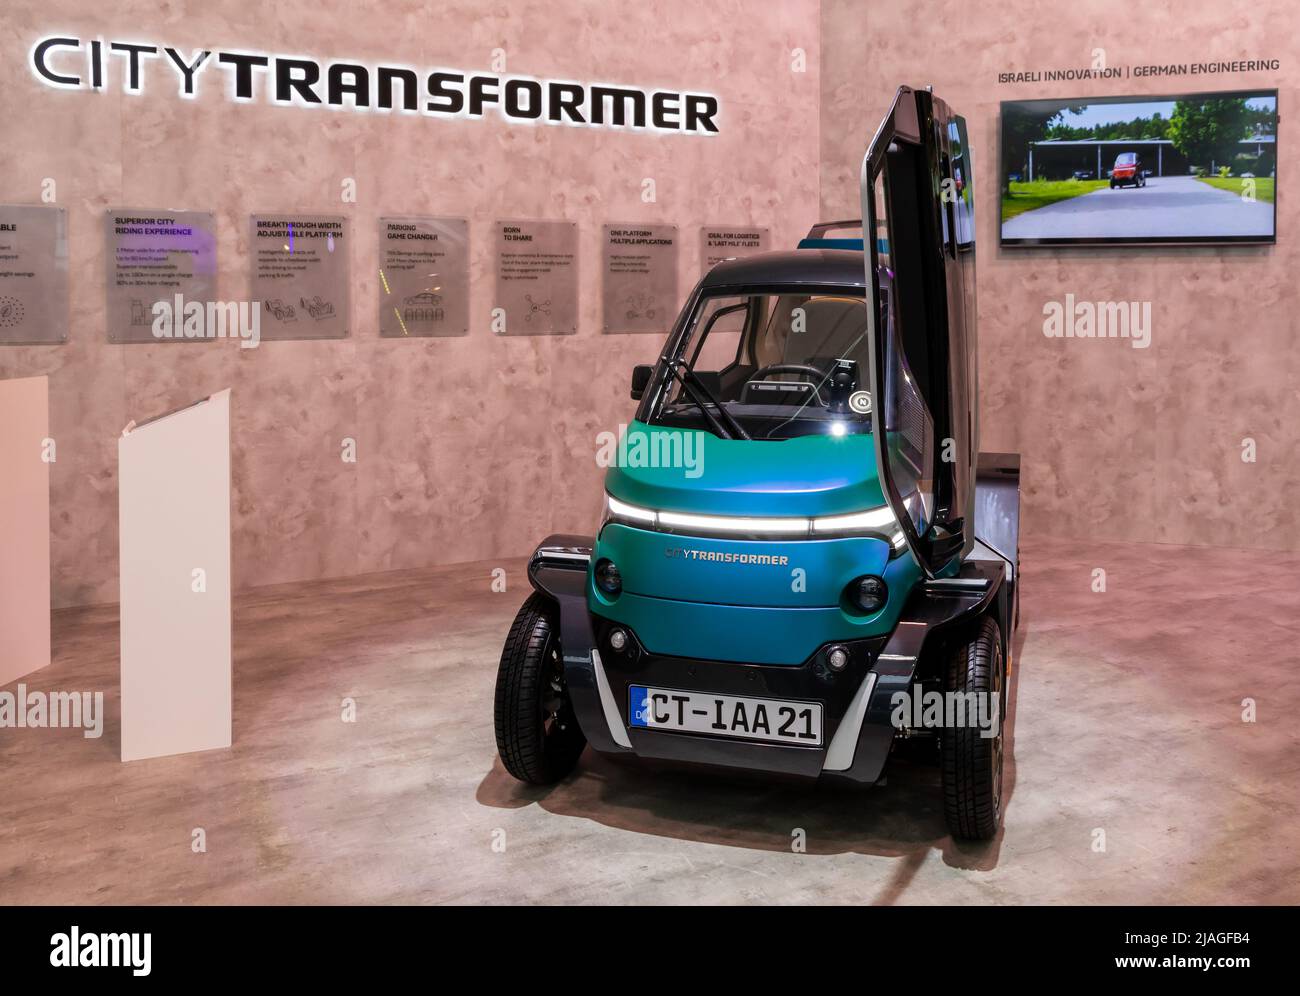 City Transformer Elektro-Faltwagen auf der IAA Mobility 2021 in München, Deutschland - 6. September 2021. Stockfoto